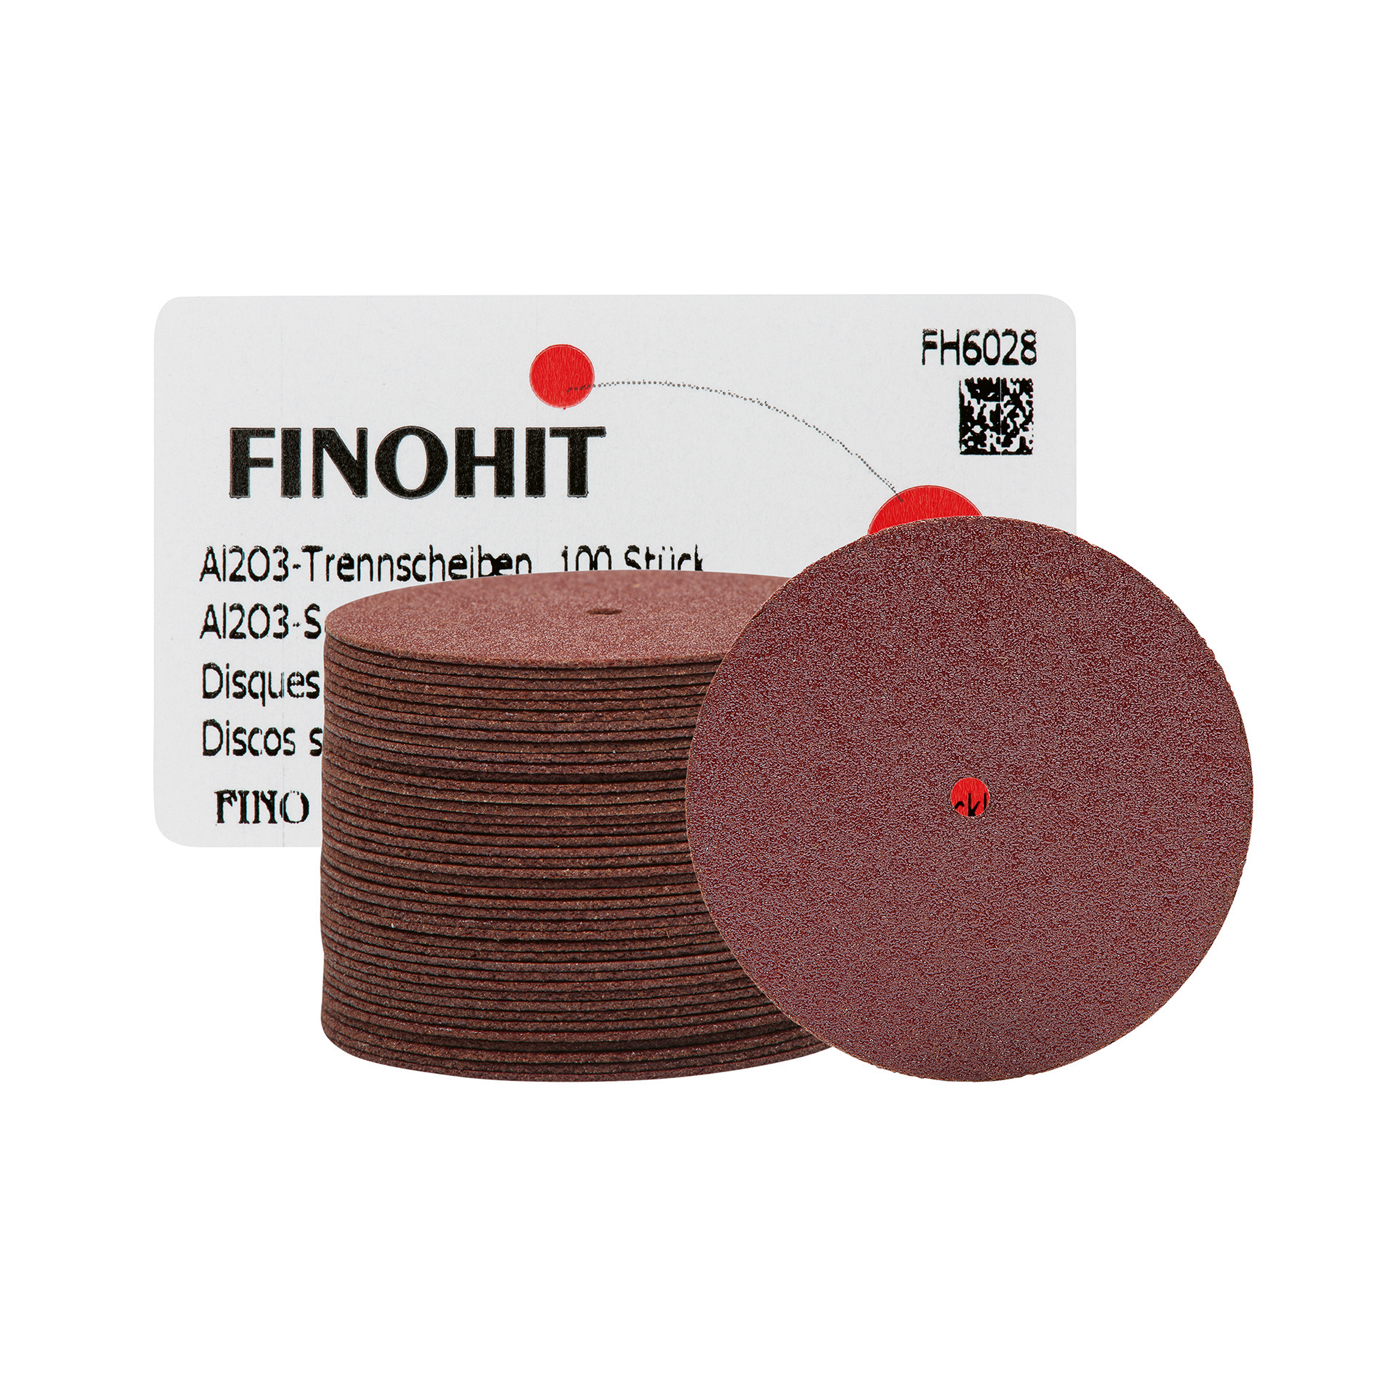 FINOHIT Separating Discs, Aluminium Oxide, ø 29.0 x 0.5 mm - 100 pieces